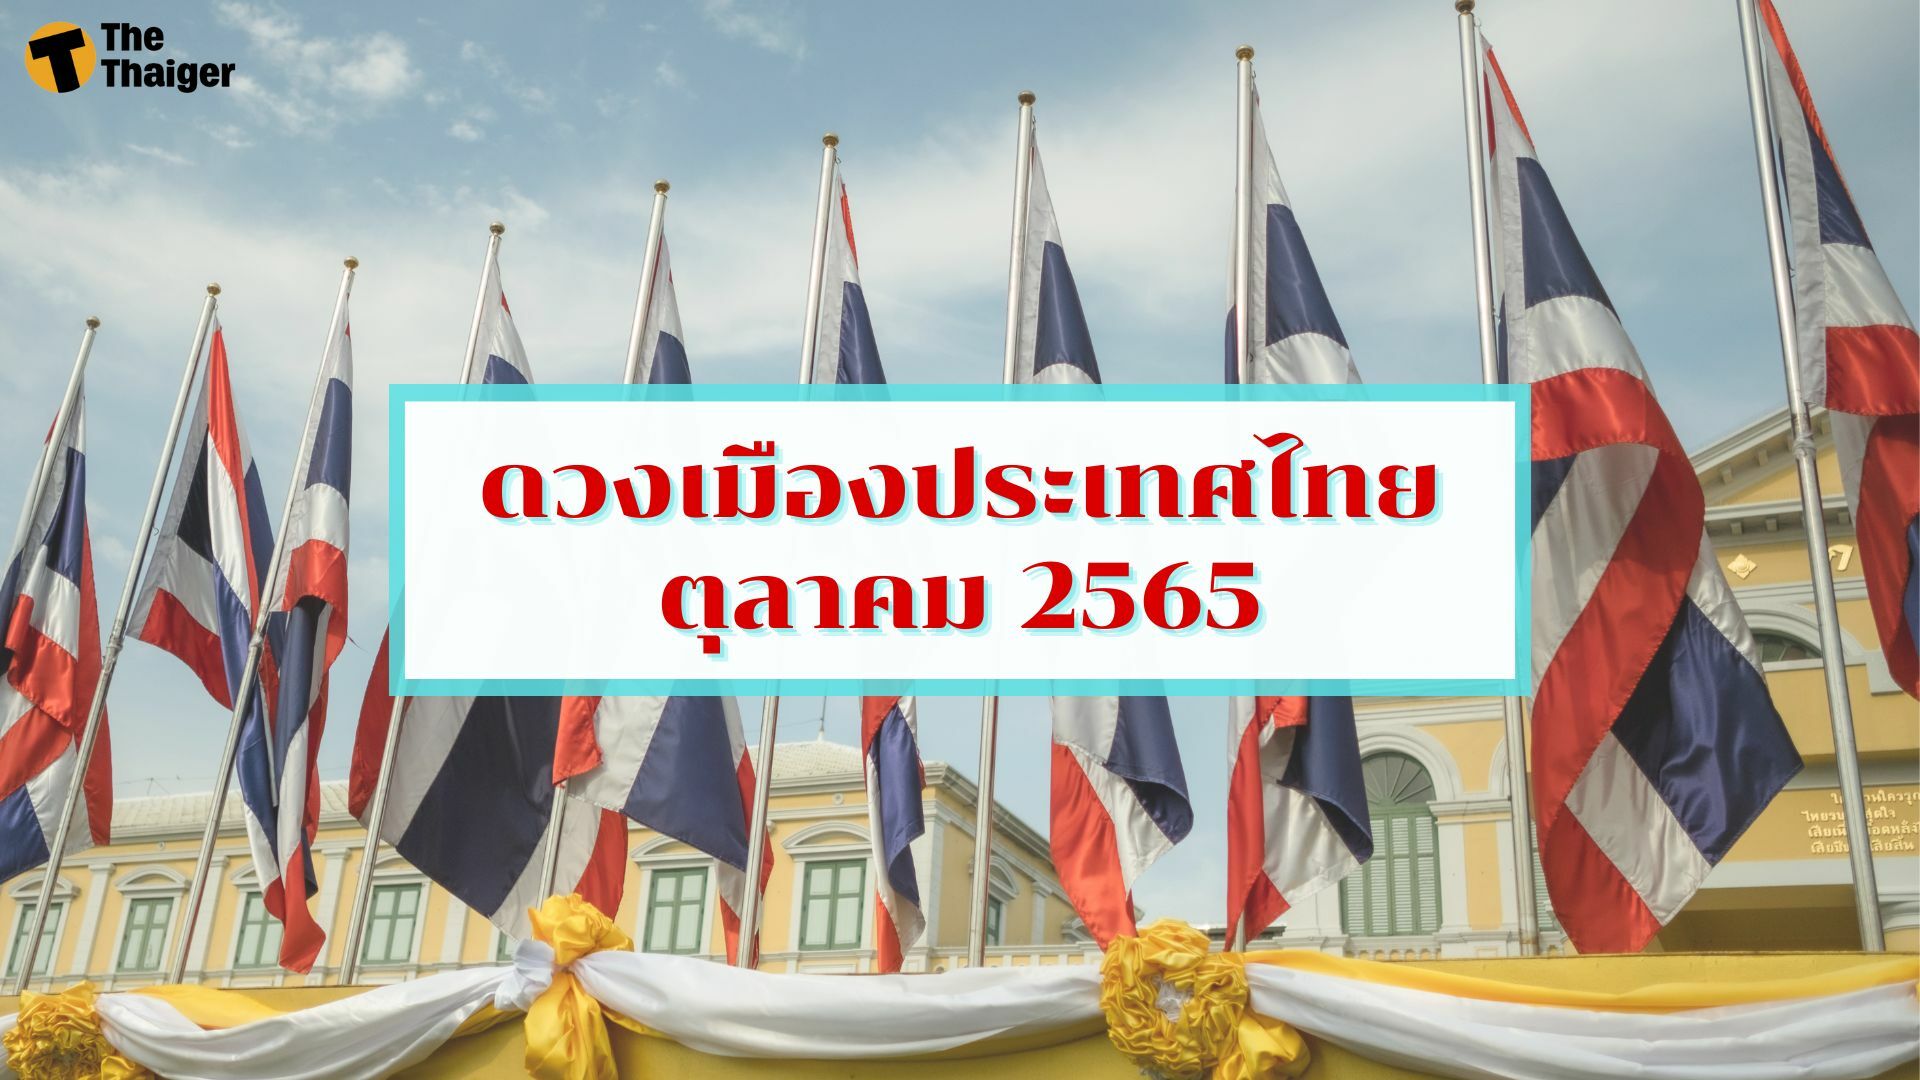 ดวงเมืองประเทศไทย ตุลาคม 2565